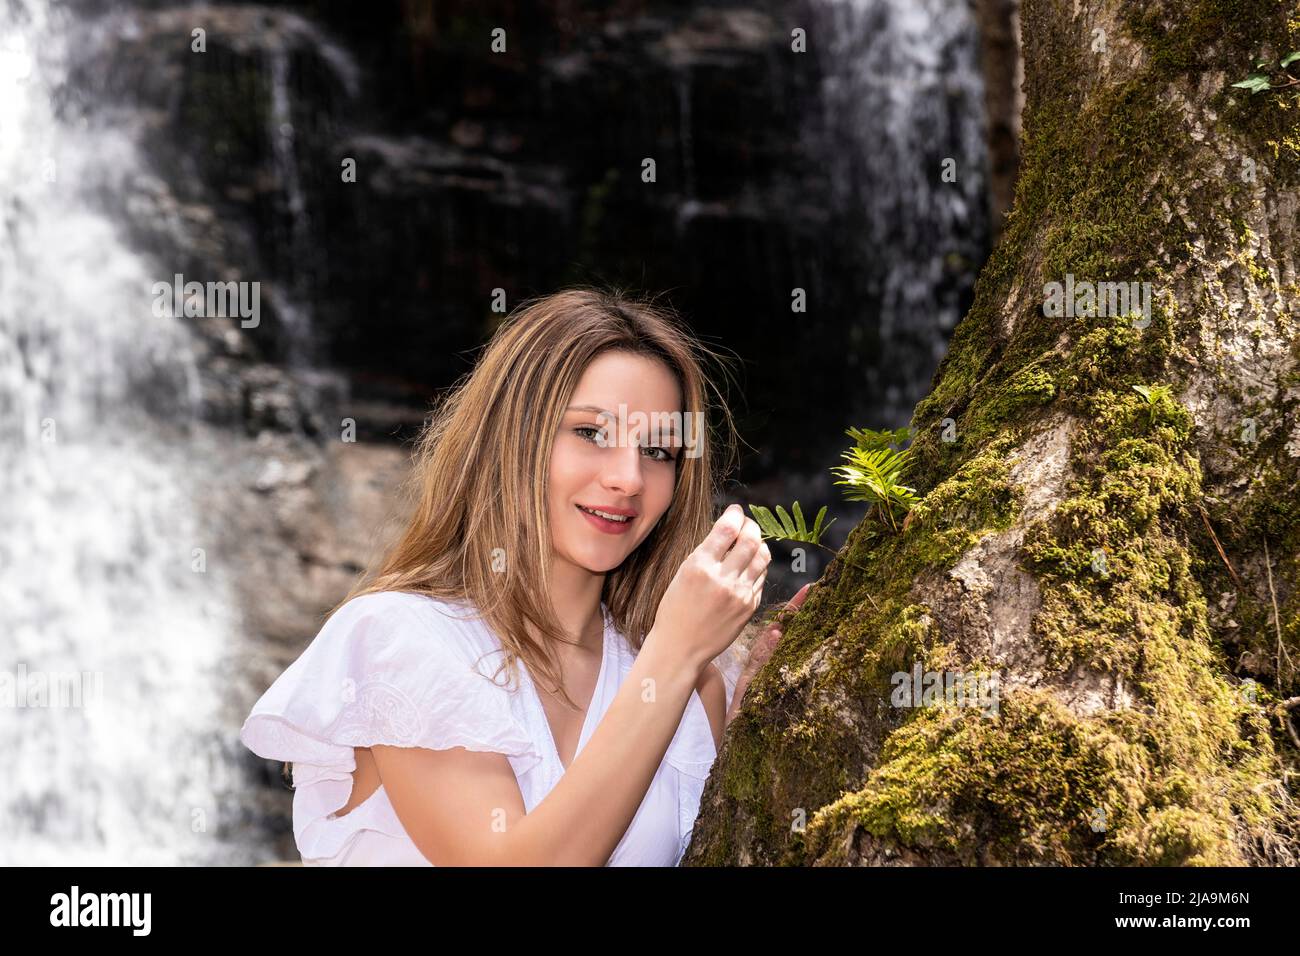 femme blonde souriante dans la forêt avec une cascade Banque D'Images